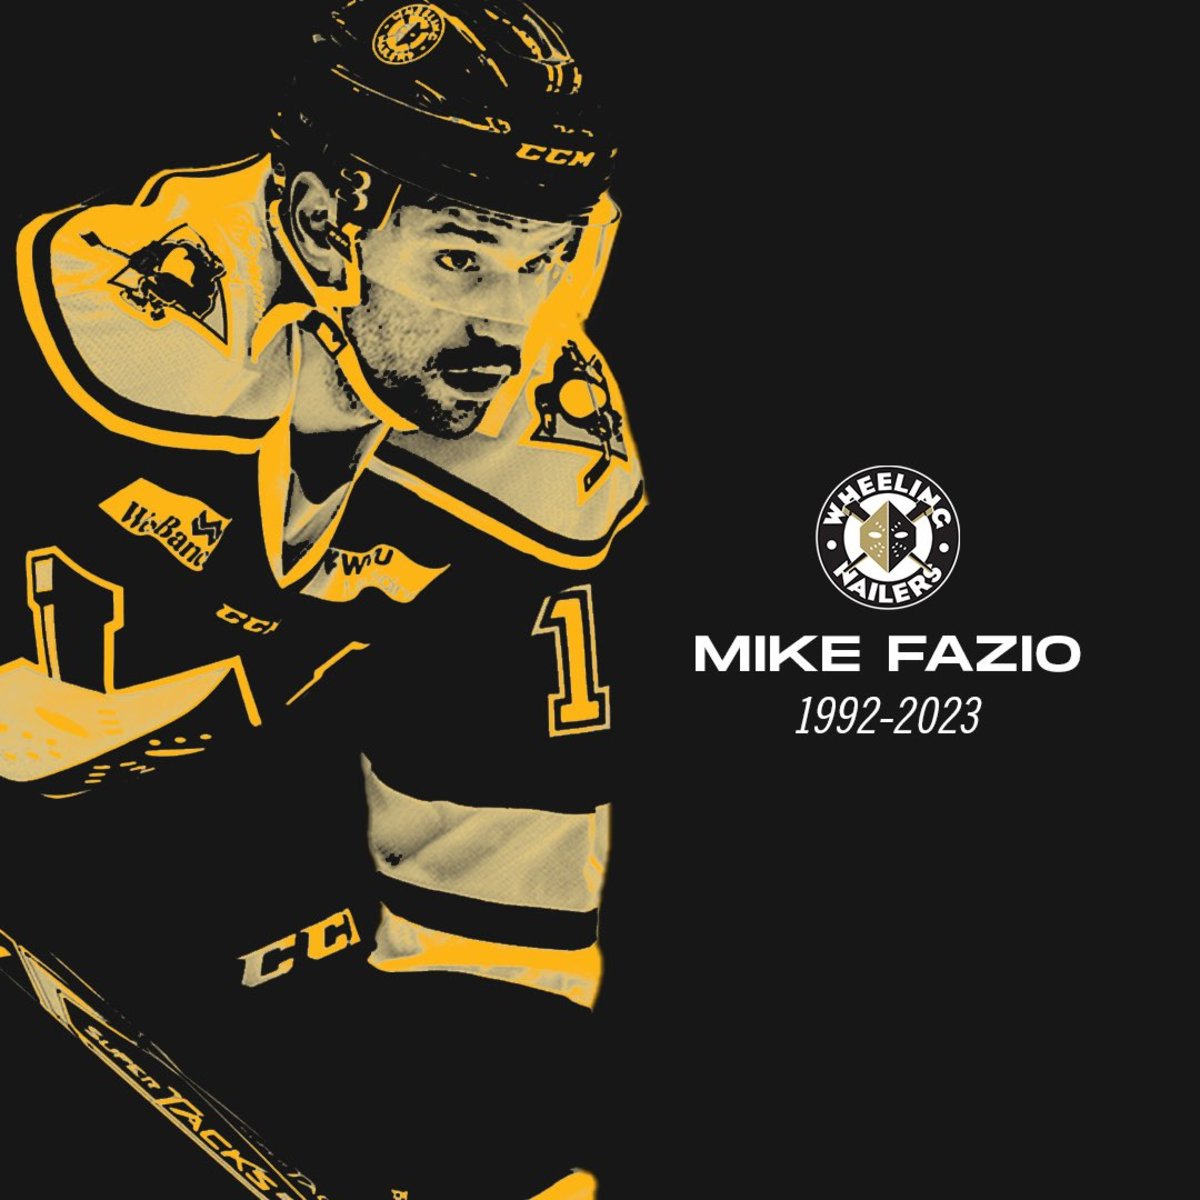 ECHL Alumnus Mike Fazio Passes Away - The ECHL News, Analysis and More